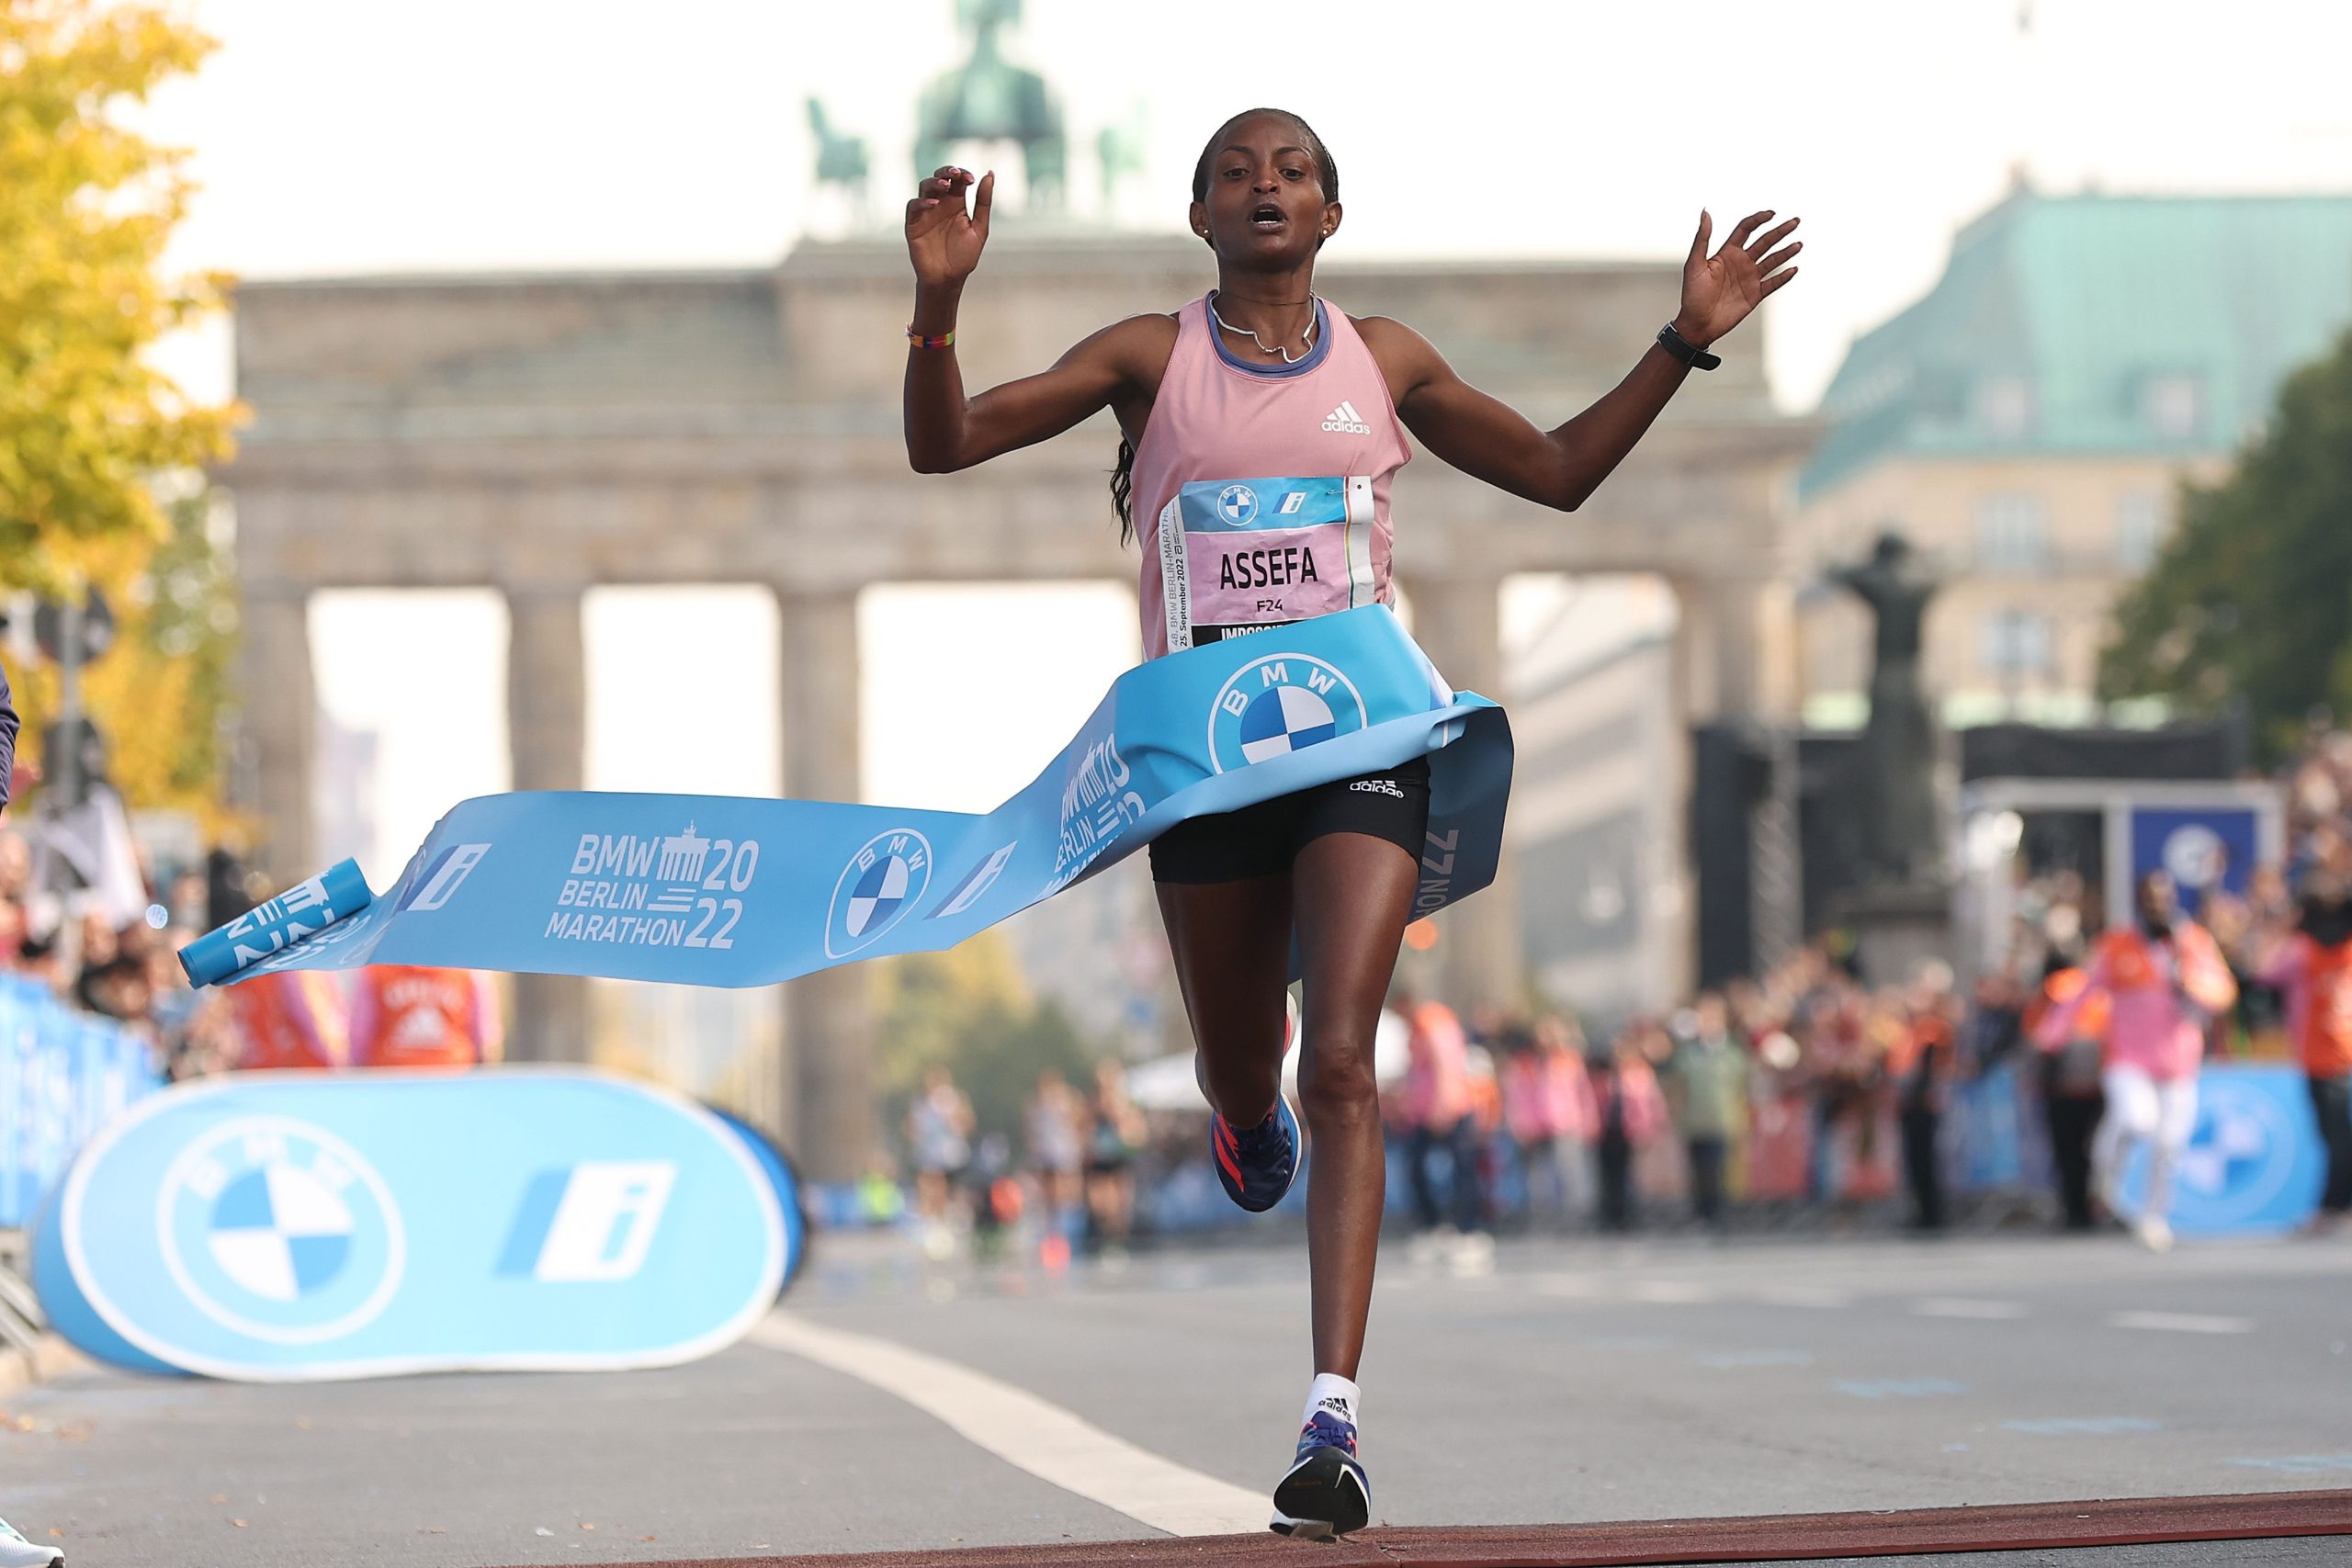  Atleta etiopiană Tigst Assefa a câştigat maratonul de la Berlin şi a stabilit un record mondial